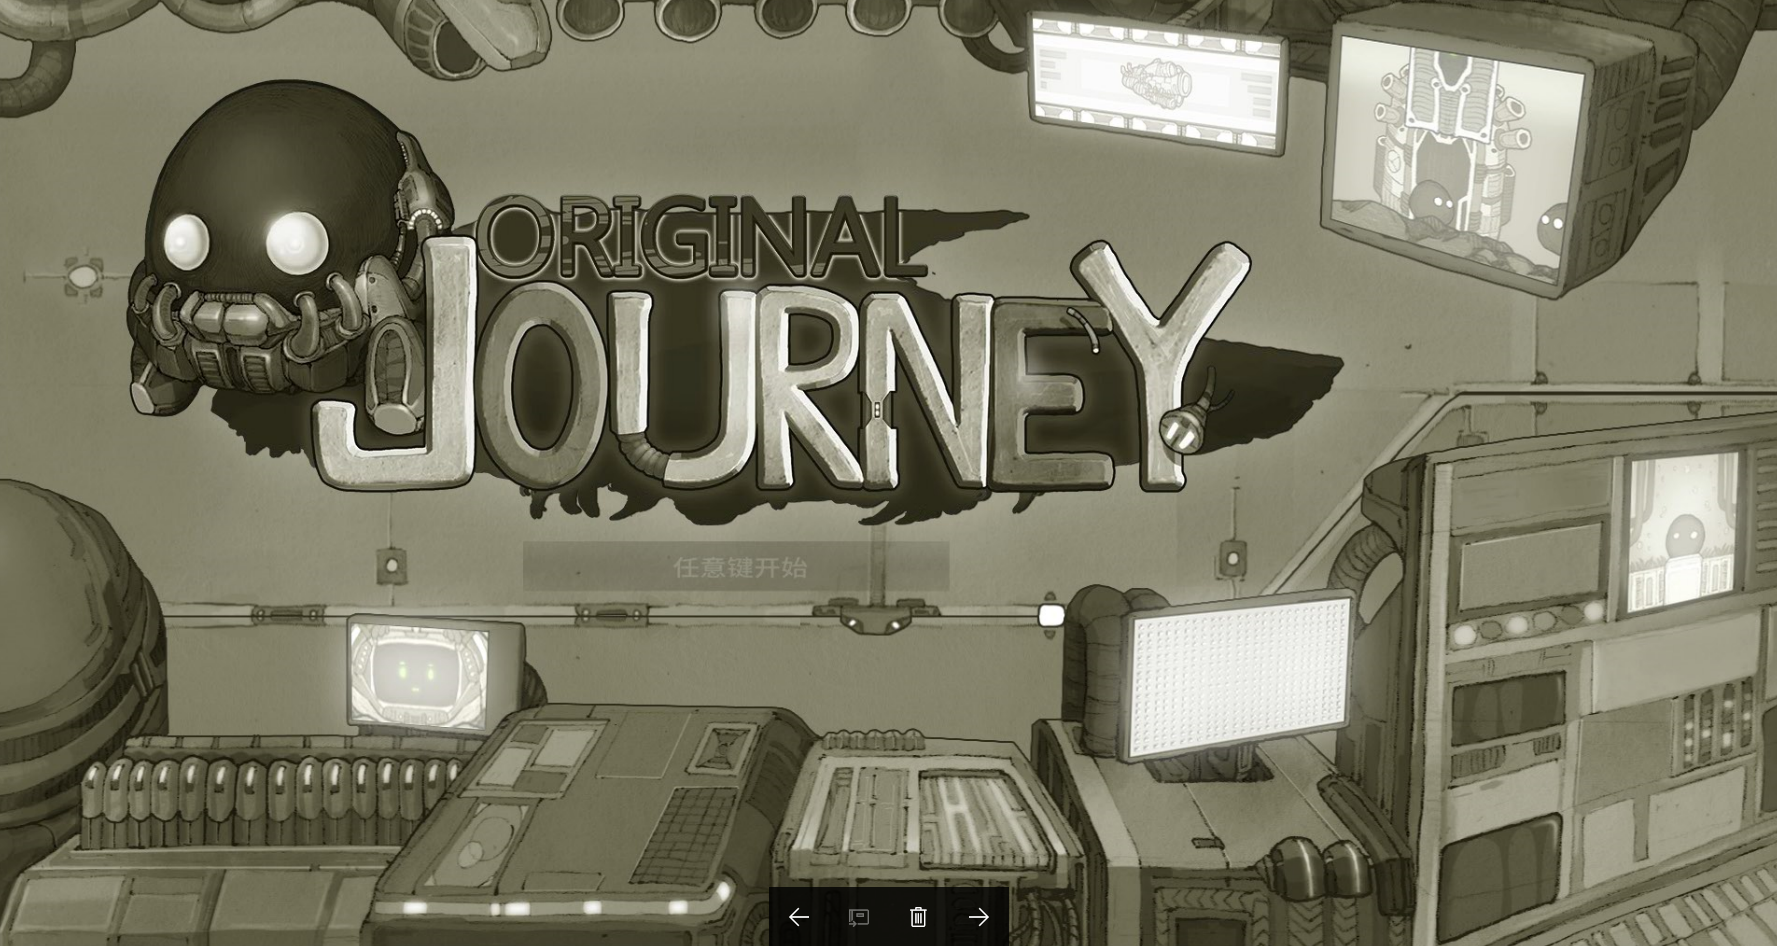 原始旅程 Original Journey游戏评测20170808001